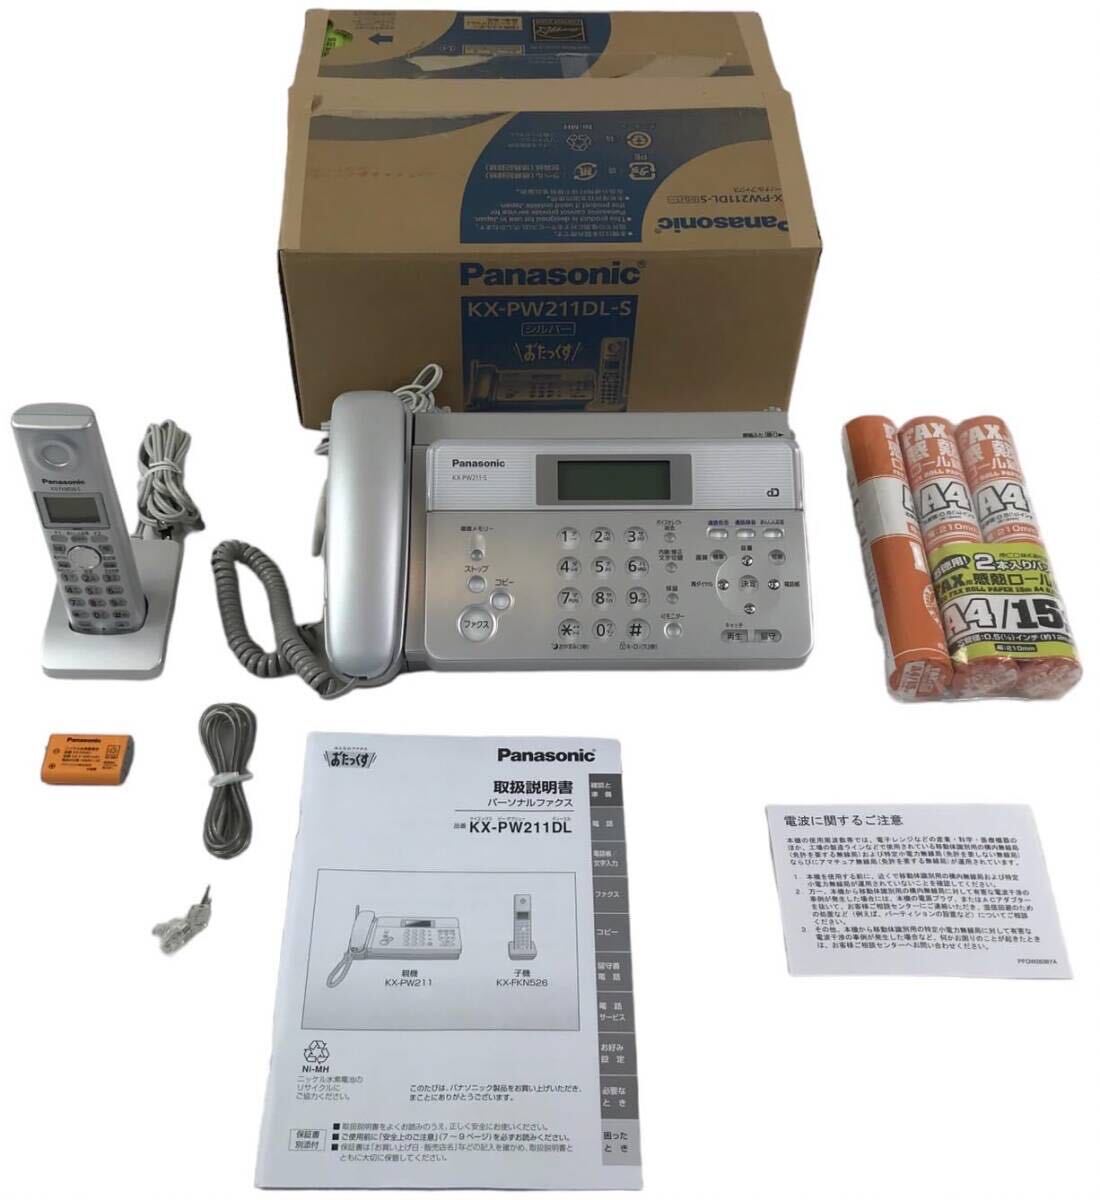 HY2333F Panasonic цифровой беспроводной термочувствительная бумага FAX беспроводная телефонная трубка 1 шт. имеется серебряный KX-PW211DL-S